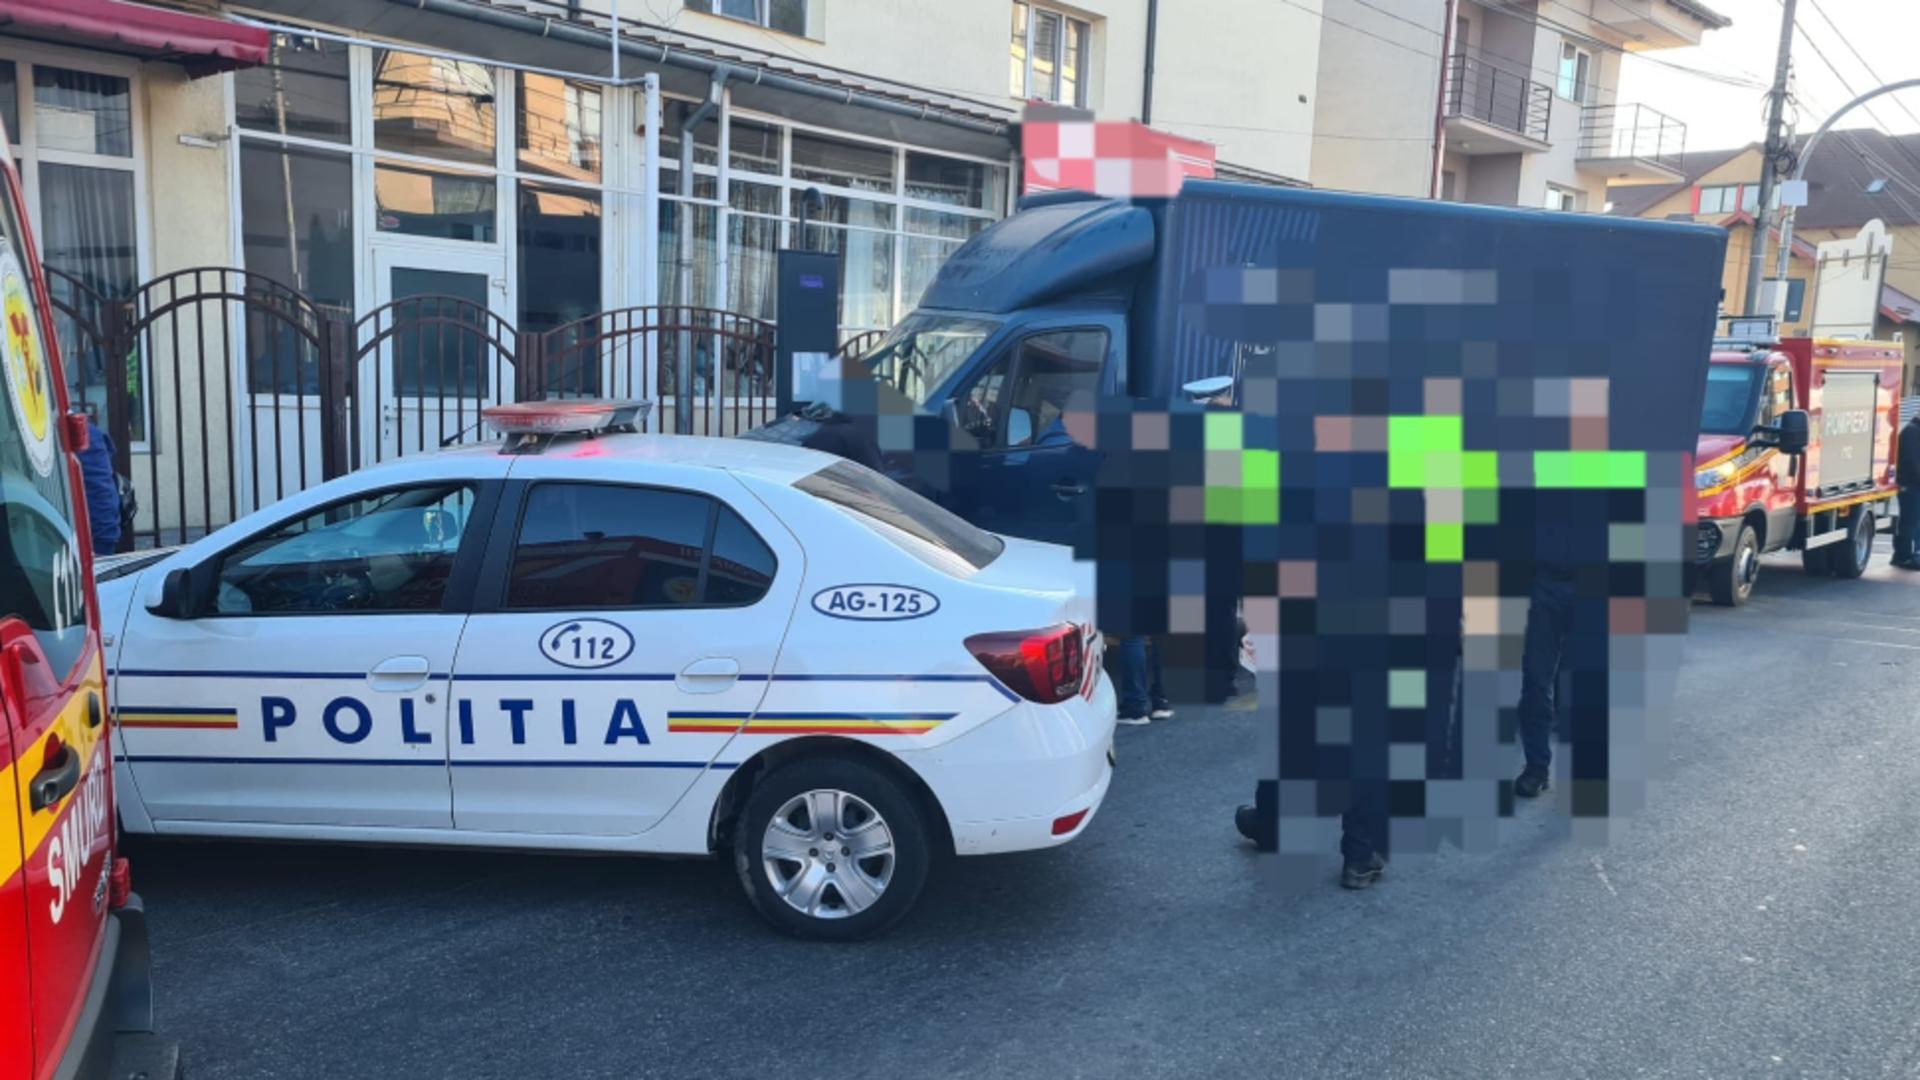 Accident grav, în Pitești. O mașină a intrat în plin într-o stație de autobuz: o victimă